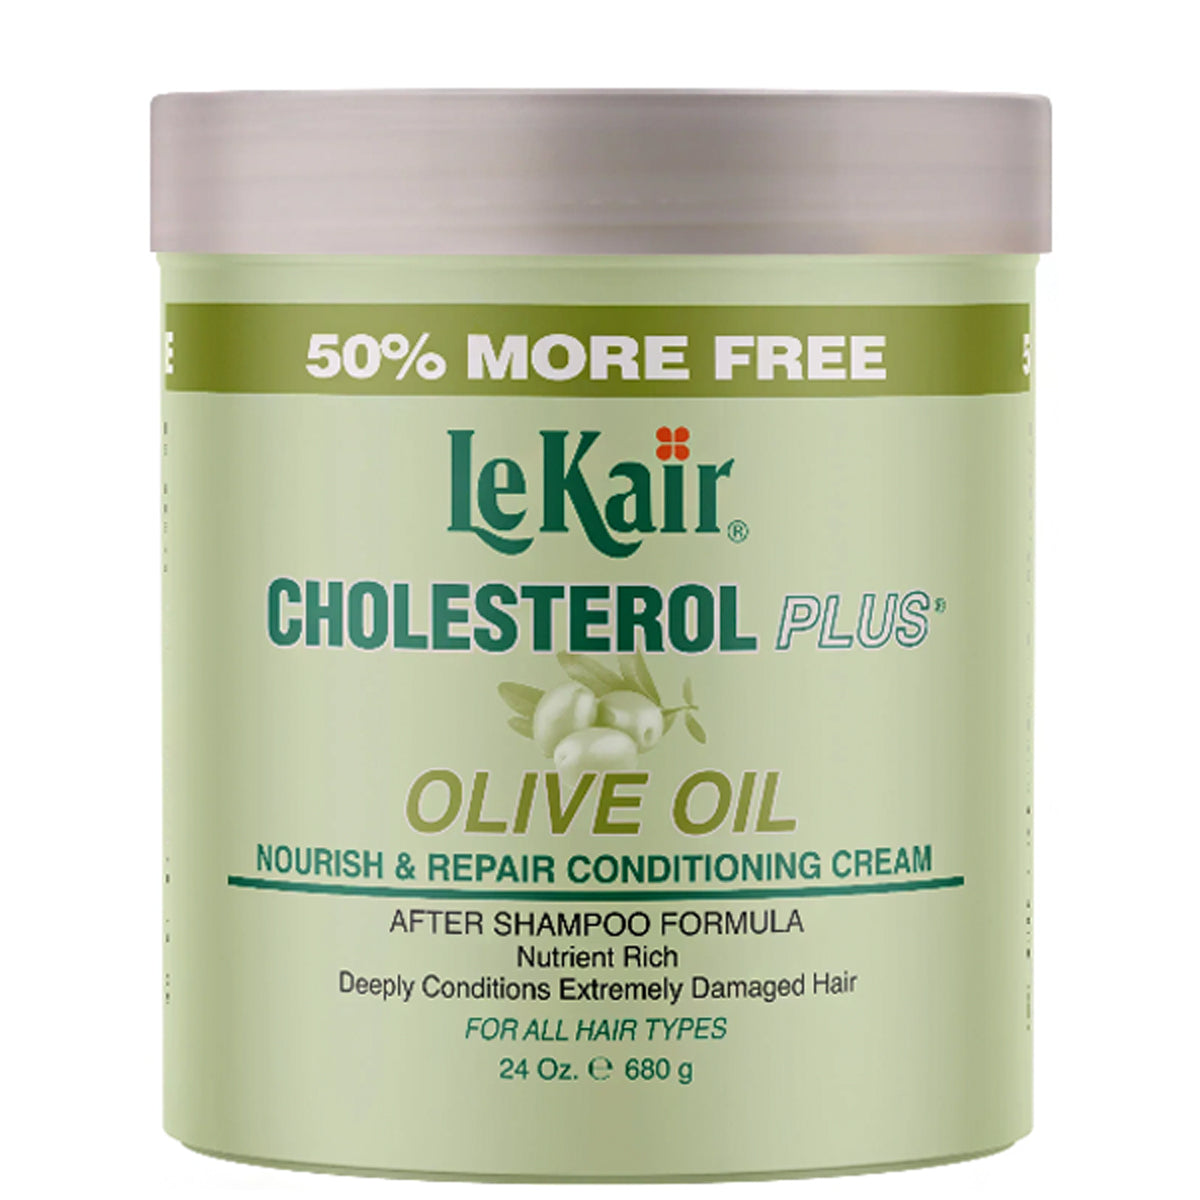 LeKair Cholesterol Plus Olive Oil Nourish and Repair Conditioning Cream 24oz